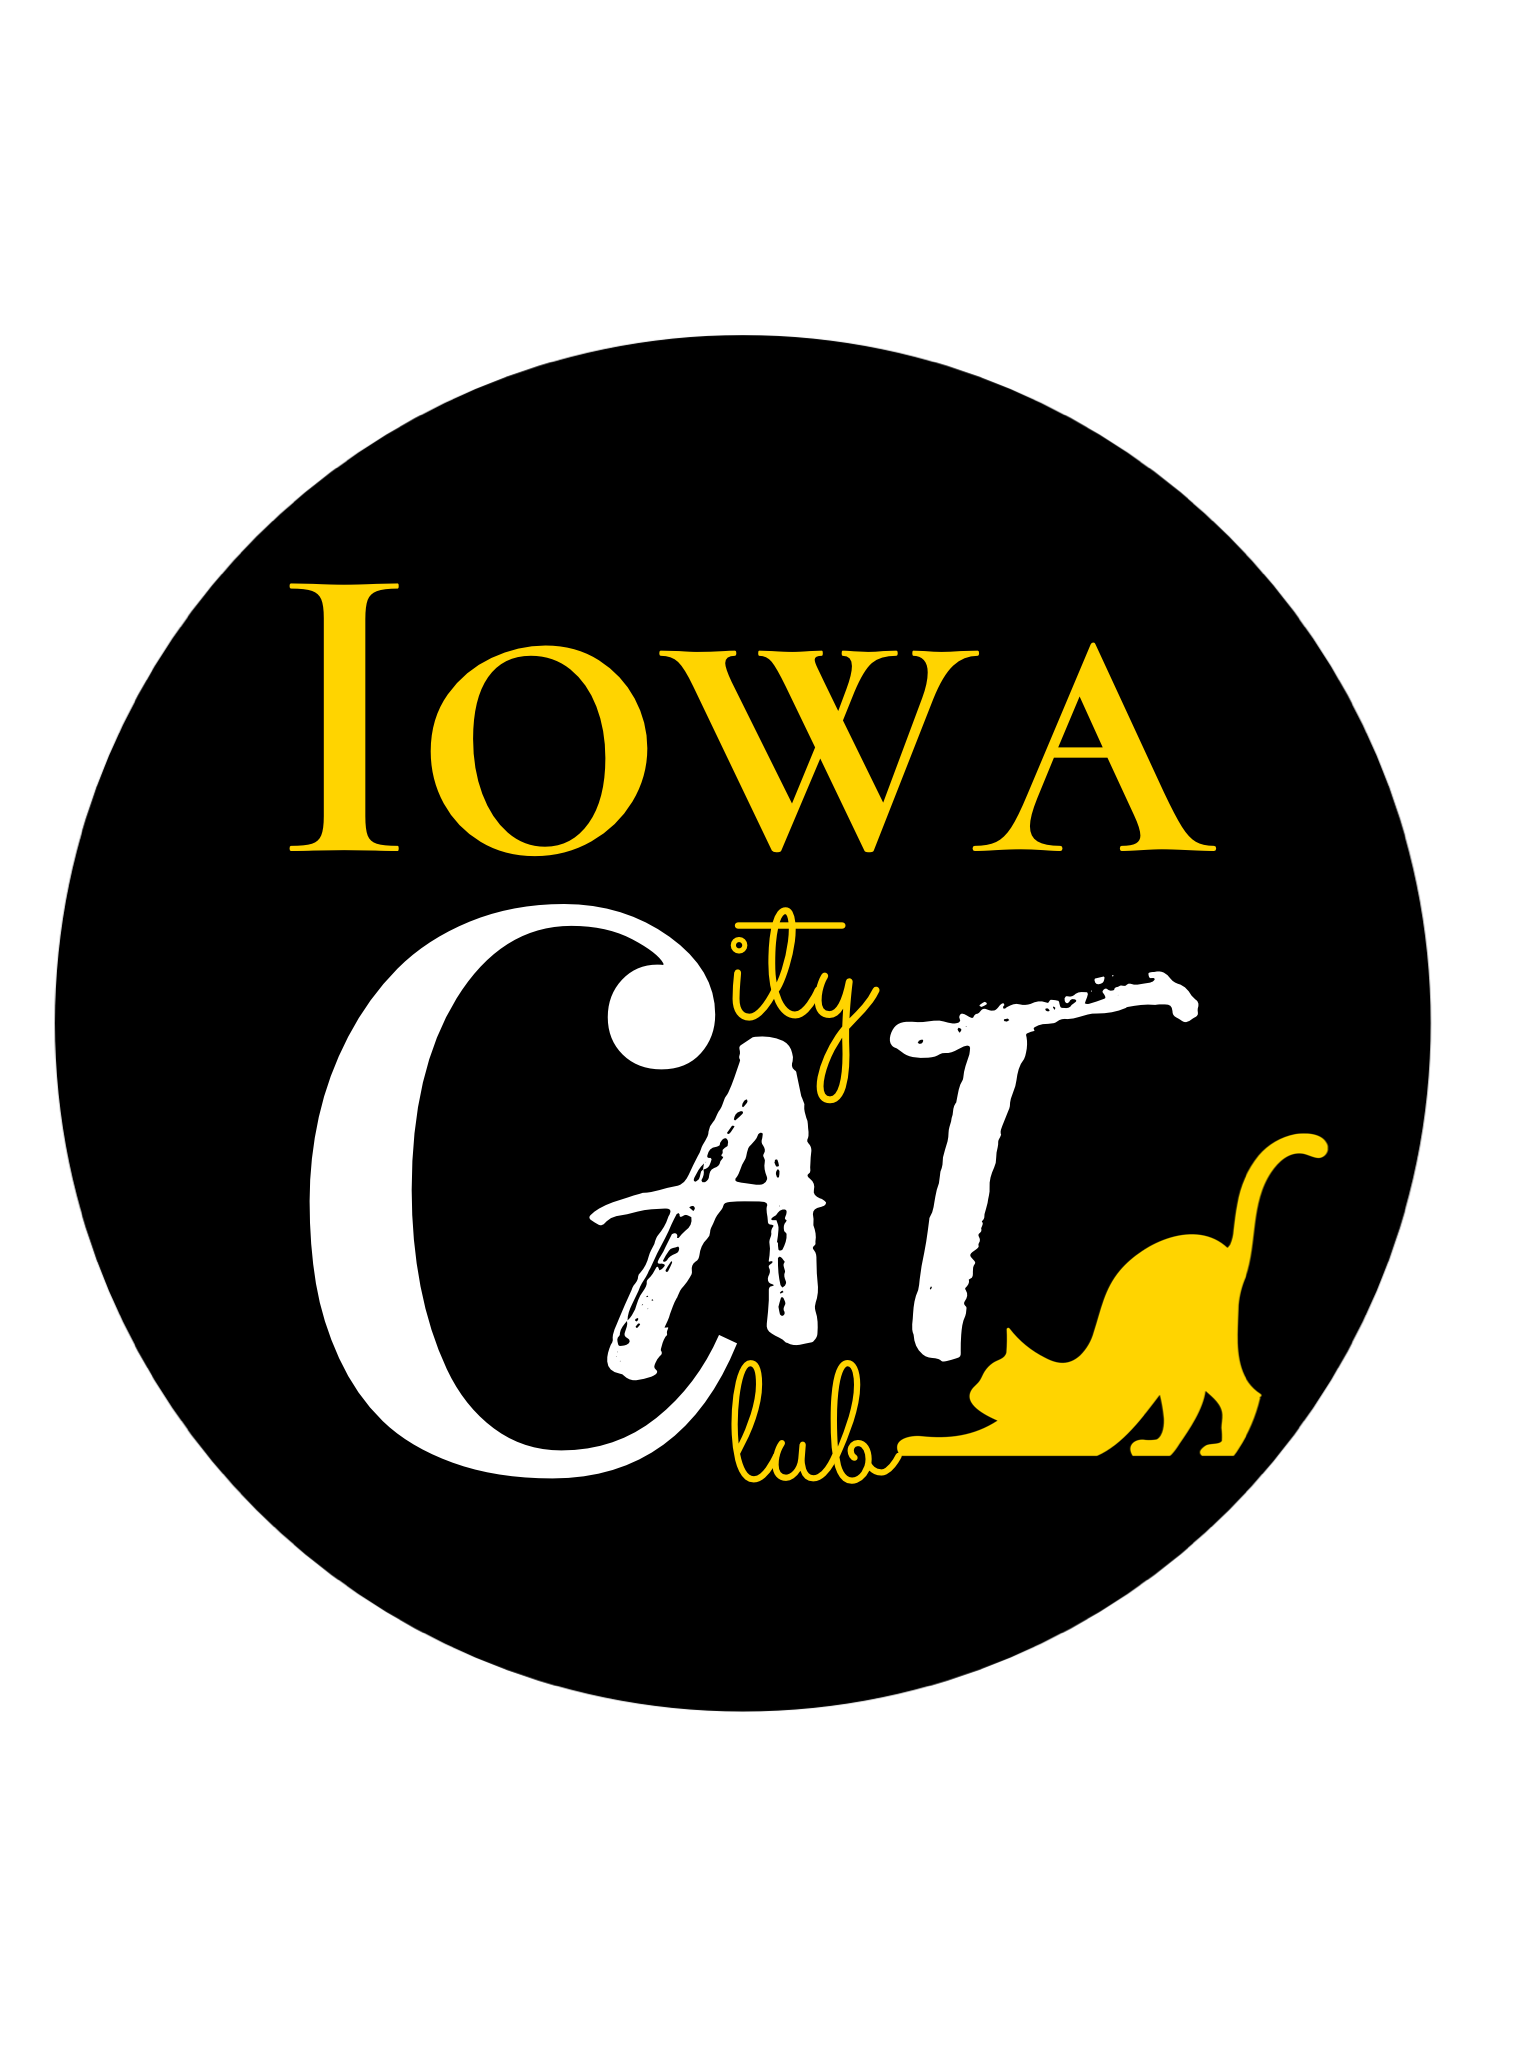 Iowa City Cat Club